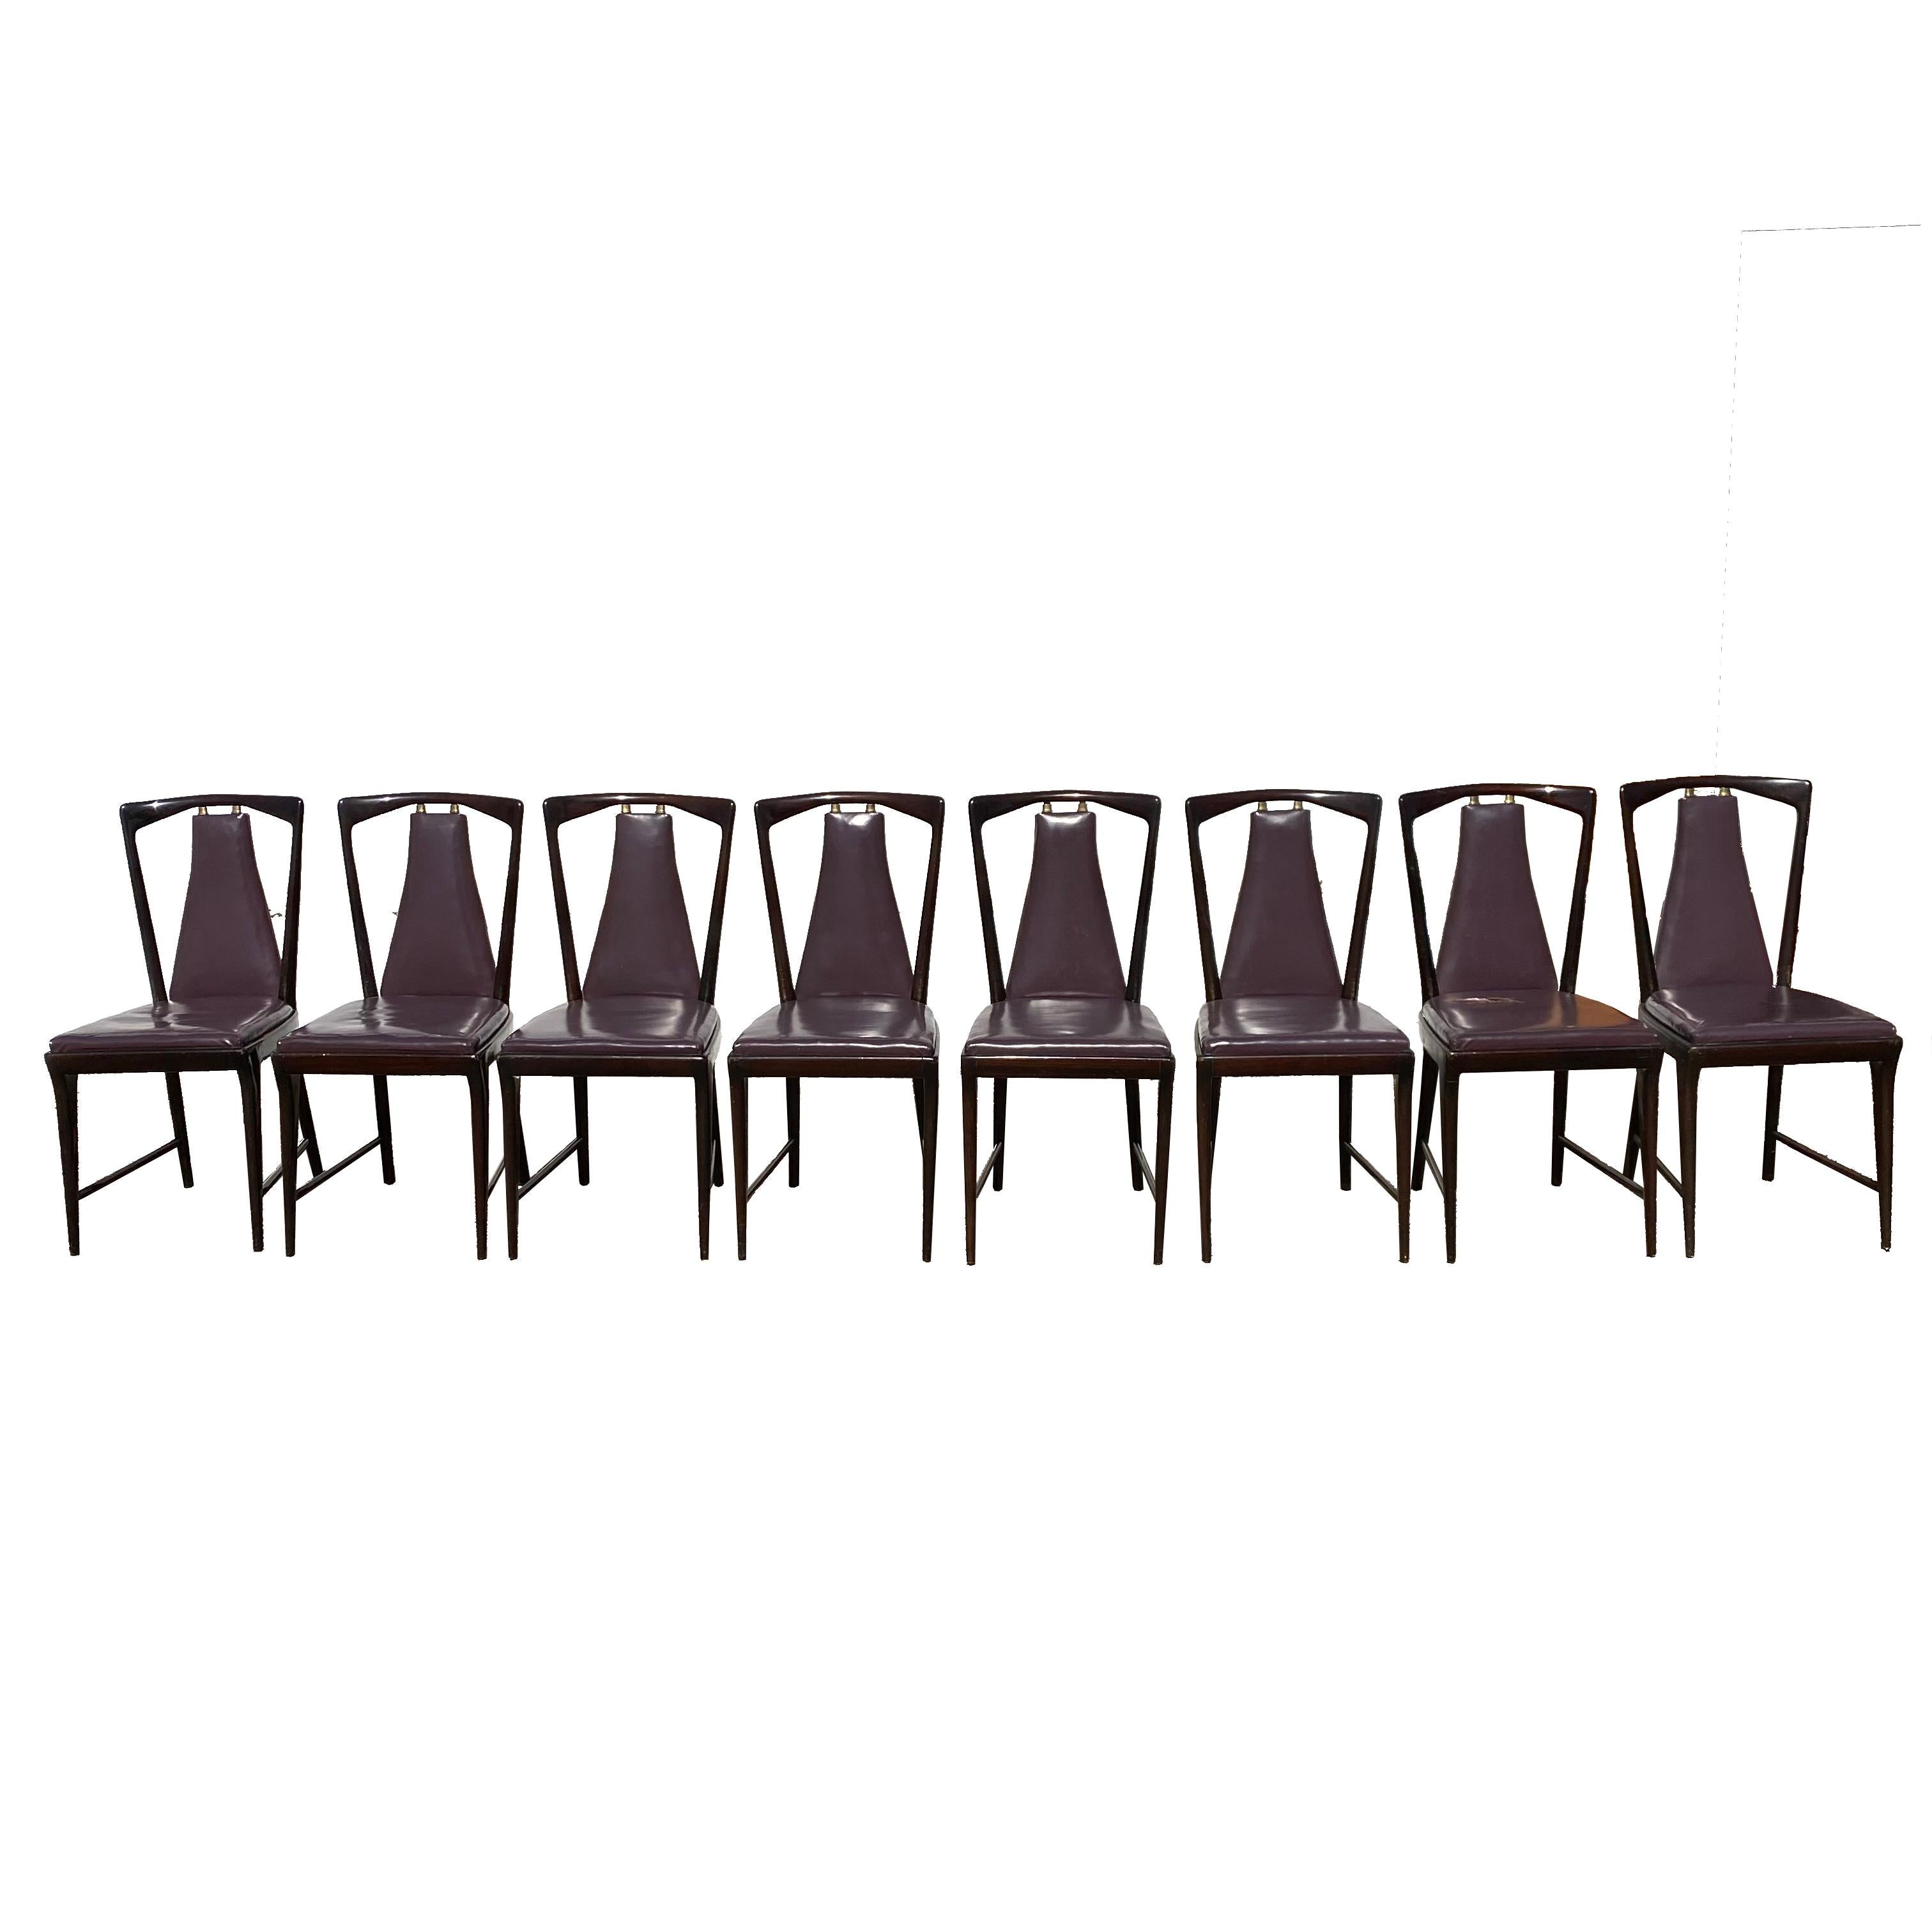 Italian Set of 8 Dining Chairs Designed by Osvaldo Borsani for Atelier Borsani Varedo